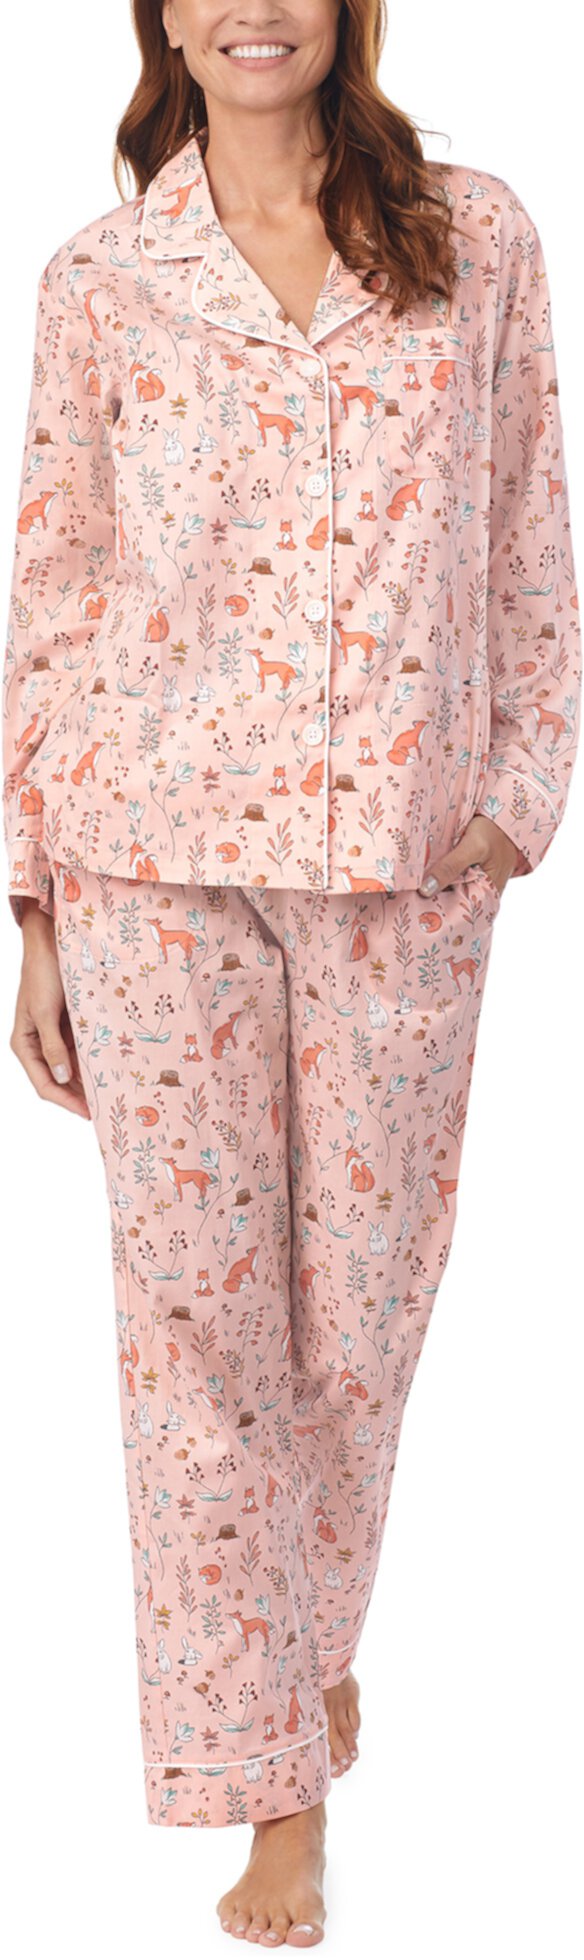 Классический пижамный комплект с длинным рукавом BedHead Pajamas